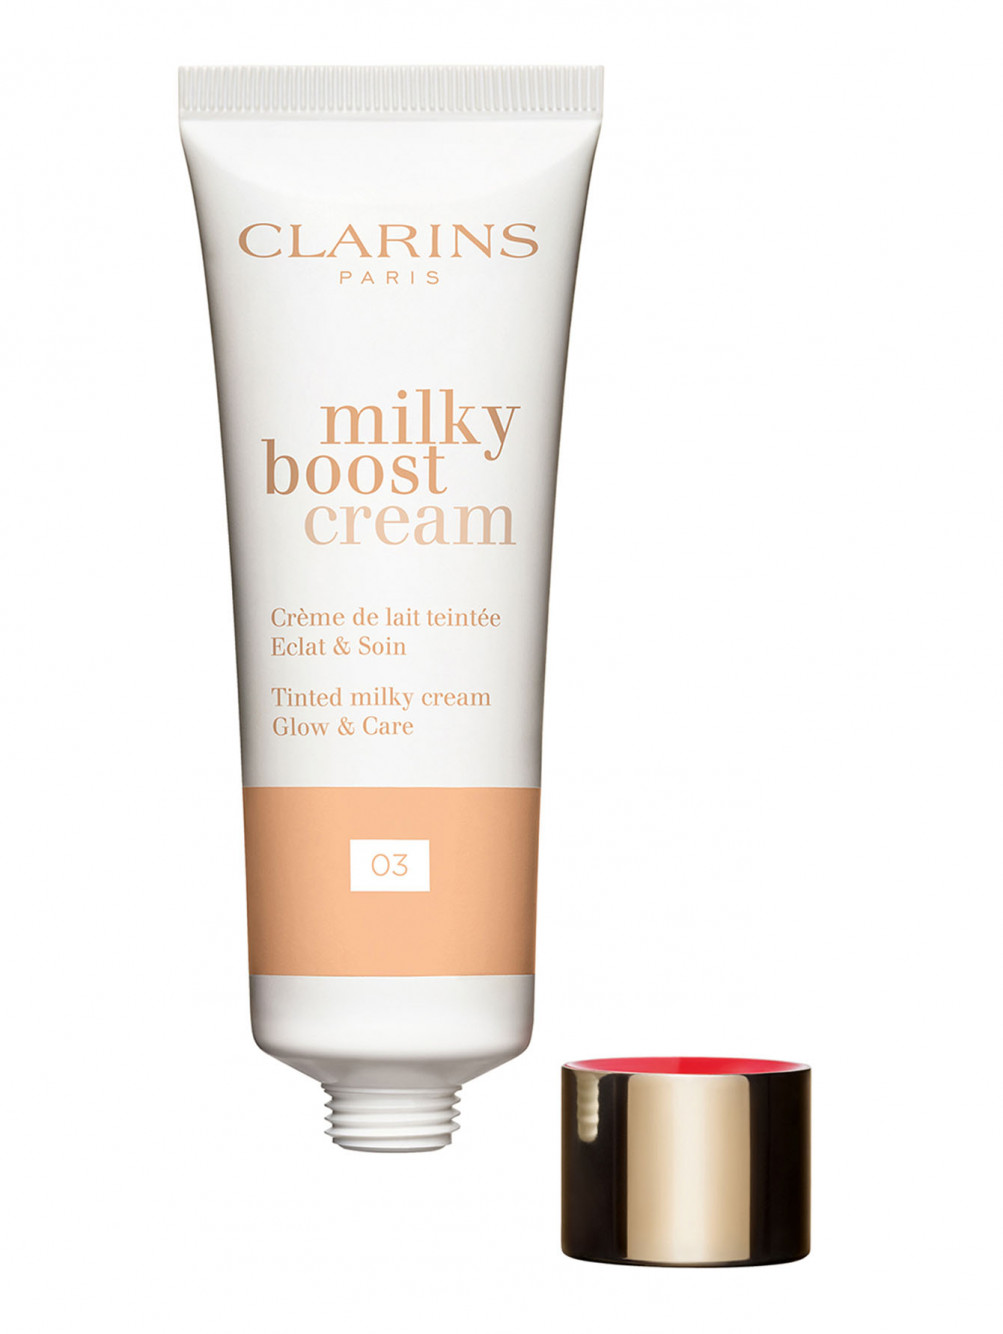 Тональный крем с эффектом сияния Milky Boost Cream, 03, 45 мл - Обтравка2